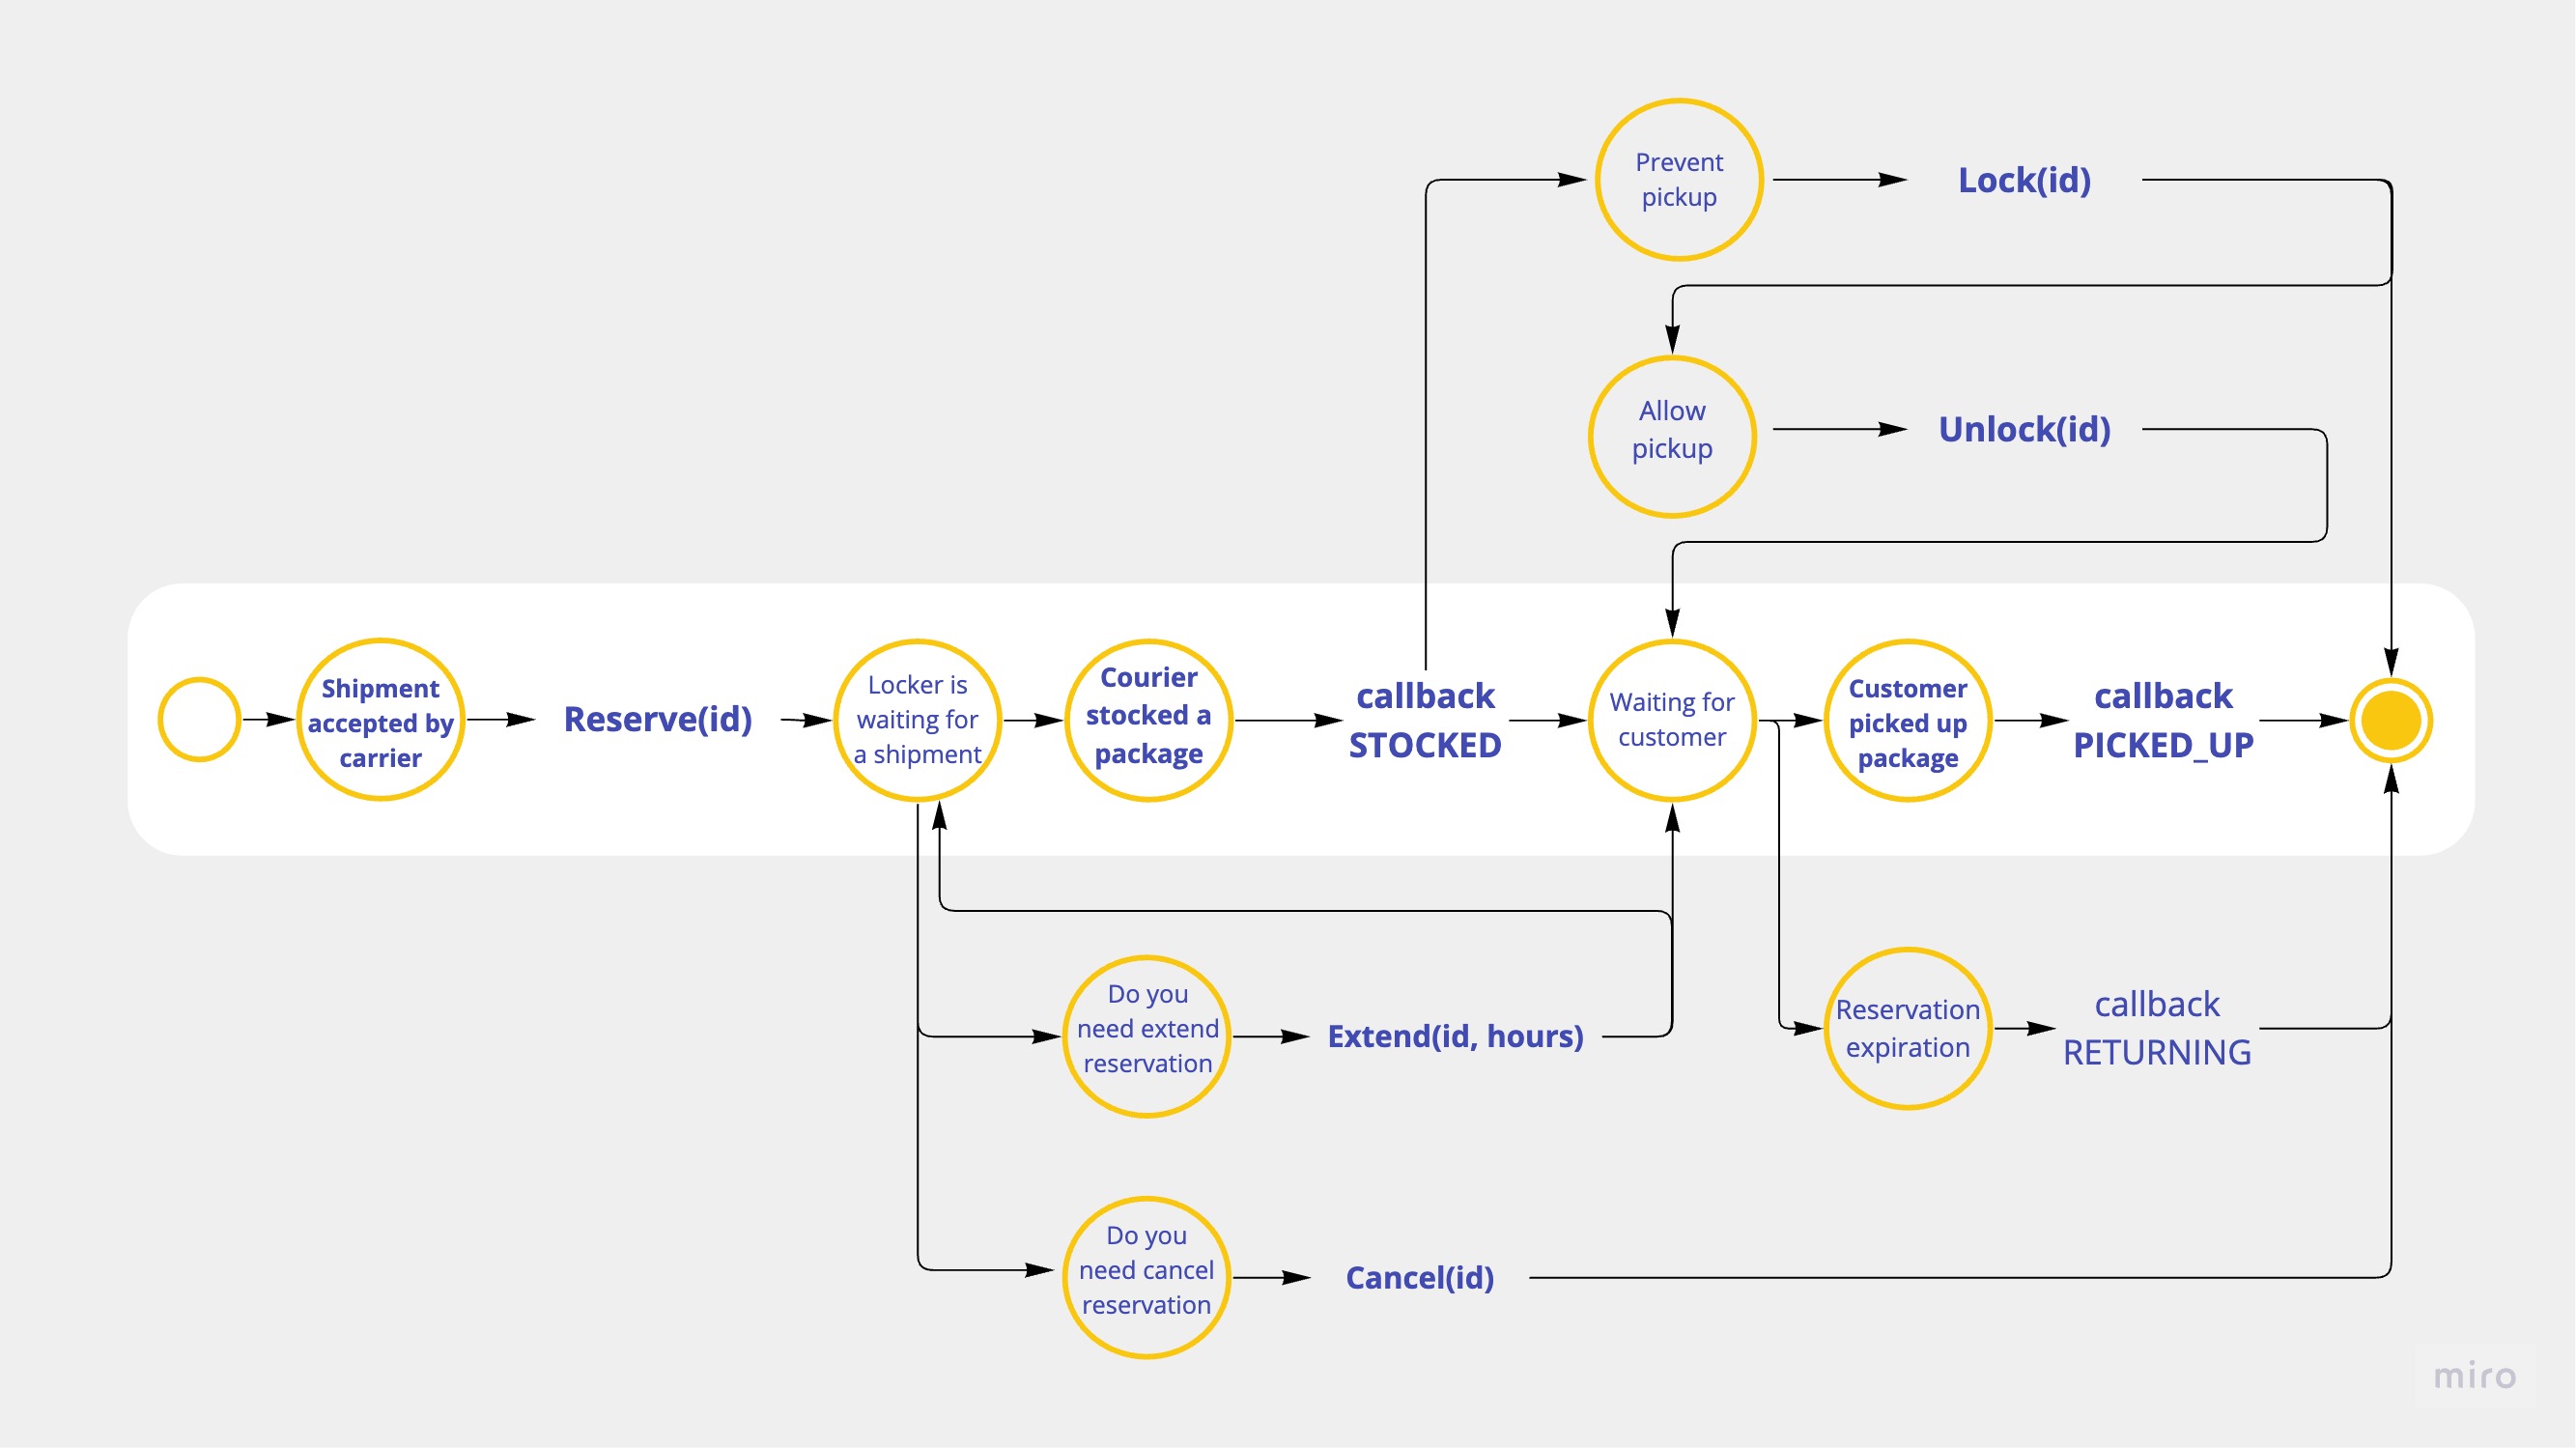 This is an AlzaBox API SDK process diagram